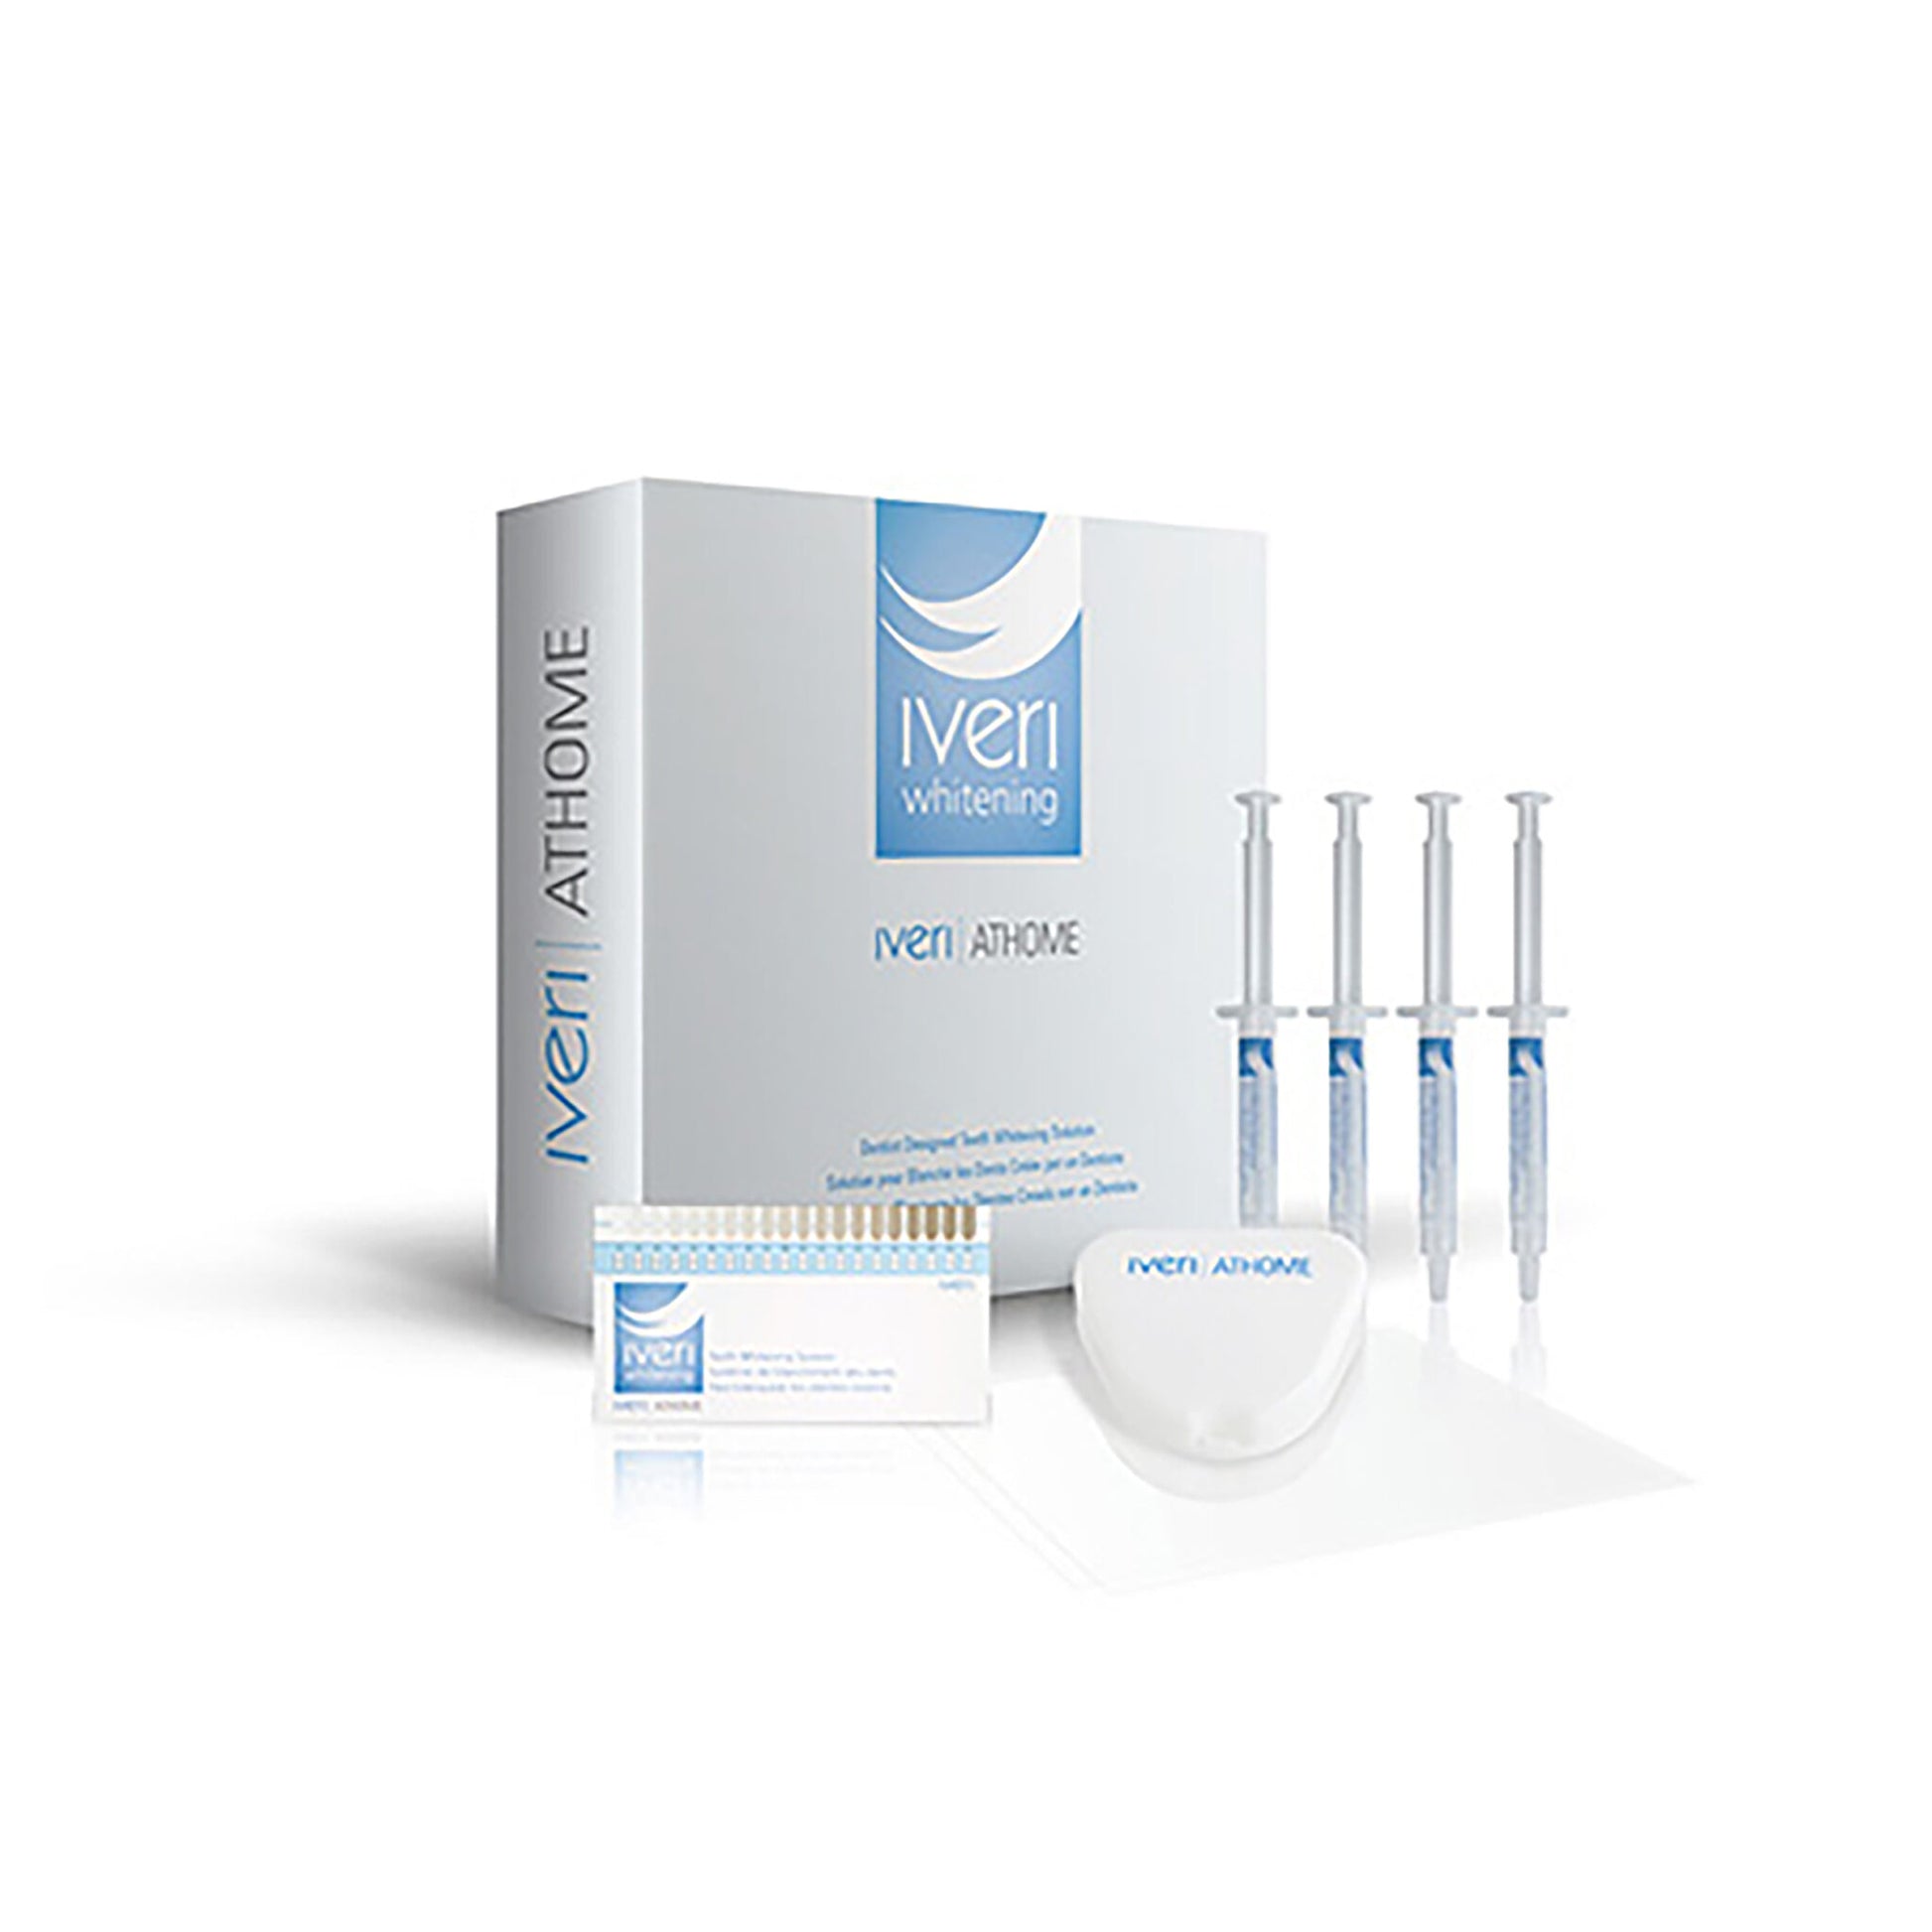 Iveri Whitening - Take-Home Teeth Whitening Kit - 16% Carbamide Peroxide